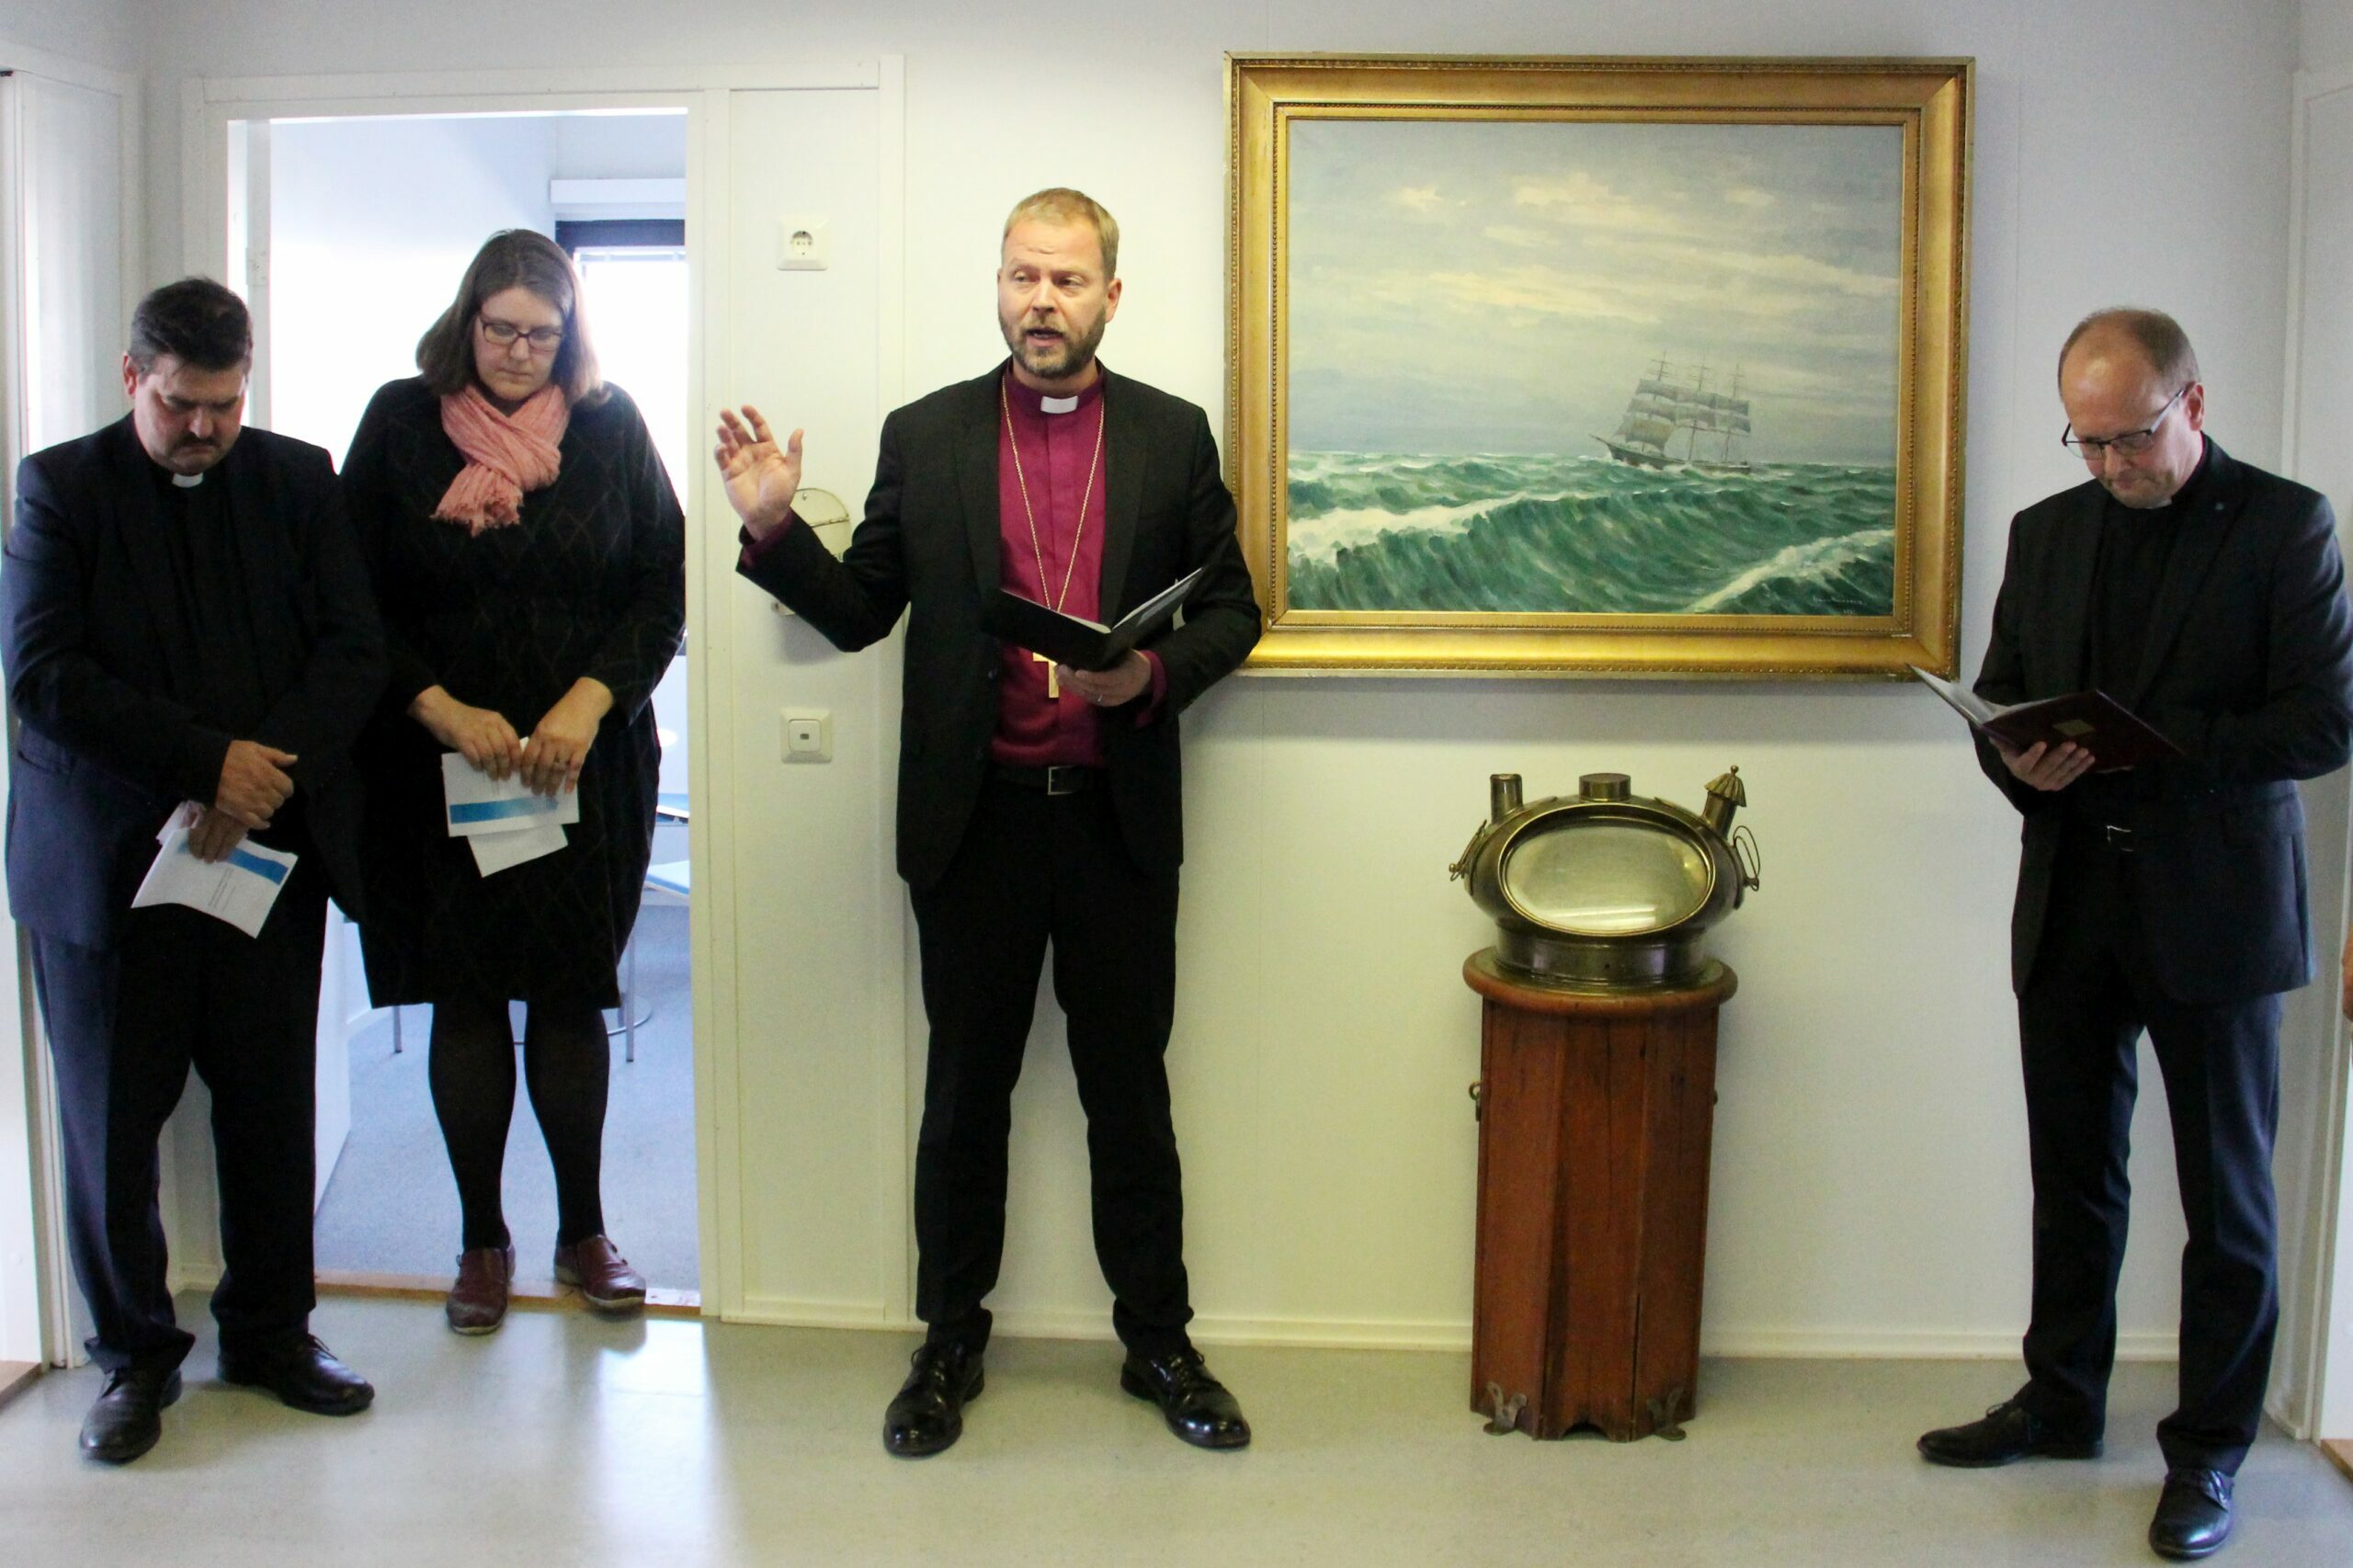 Herttoniemeen muuttaneen keskustoimiston siunaamisen toimitti piispa Teemu Laajasalo. Aulatilaa koristavat meriaiheinen taulu sekä aito vanha laivan kompassi.